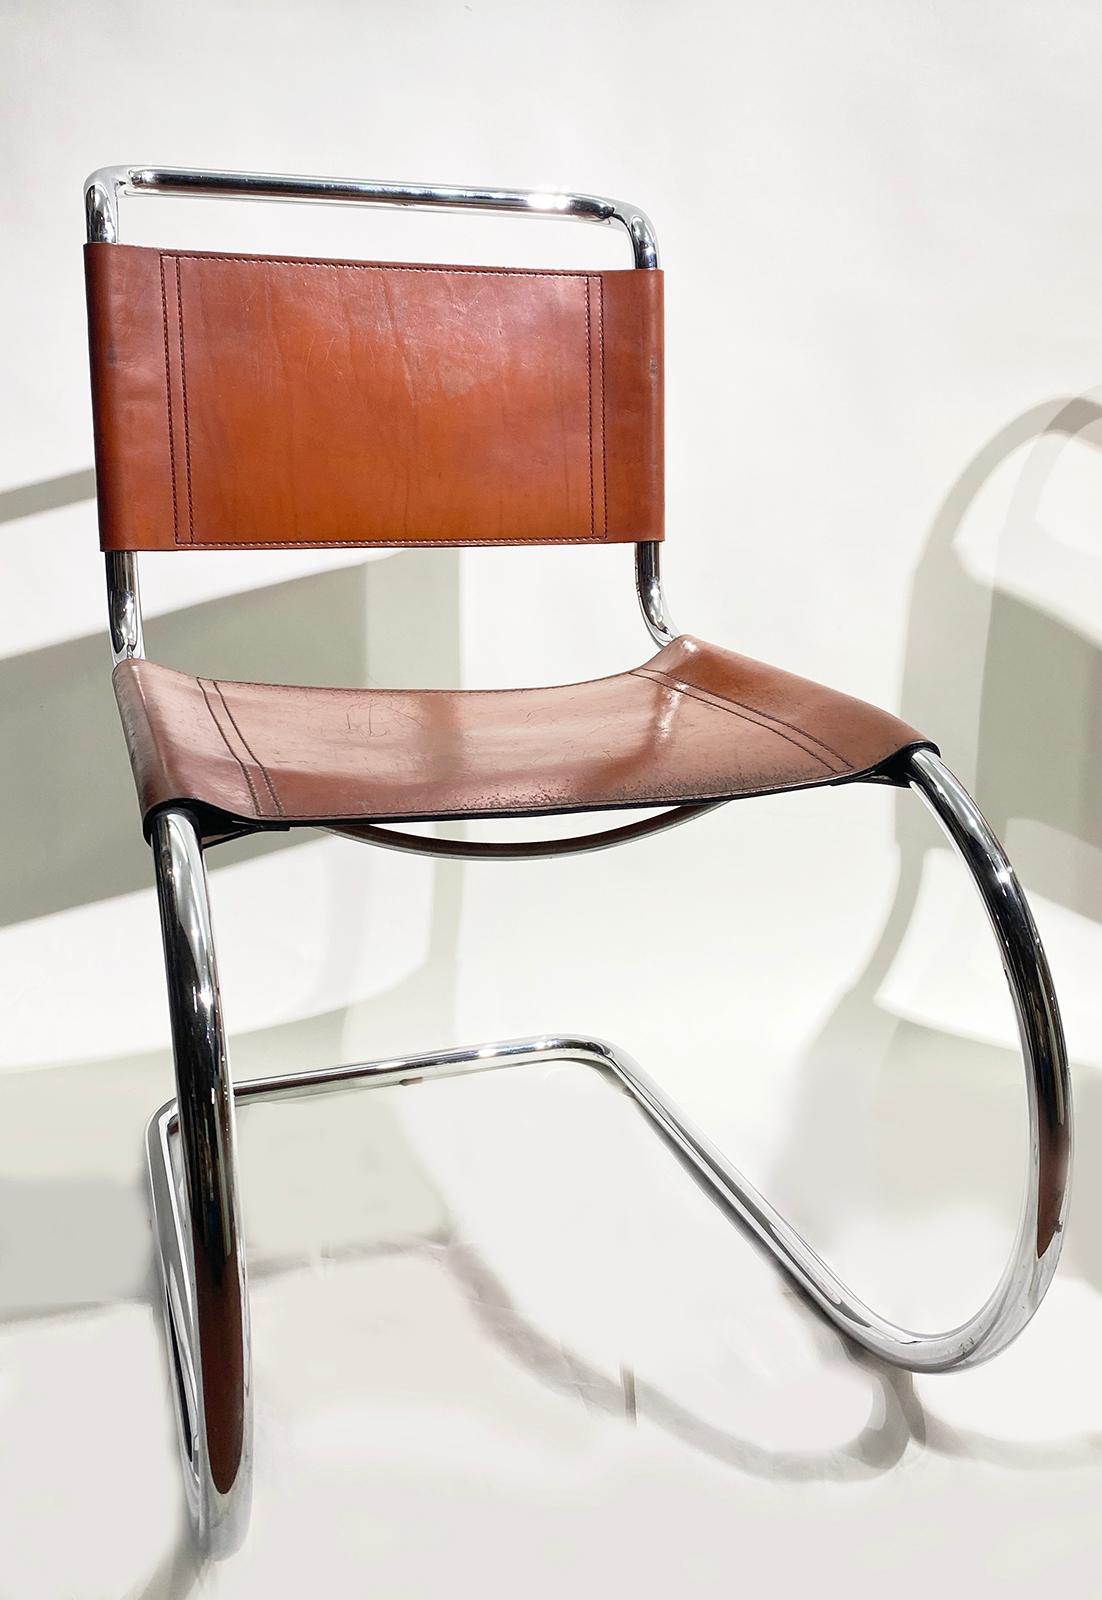 Ensemble de deux chaises cantilever MR10 par Ludwig Mies Van der Rohe pour Thonet, du mouvement Bauhaus.
Cadre en tube d'acier chromé incurvé, offrant une flexibilité à l'ensemble de la chaise.
Assise et dossier entièrement en cuir de couleur brun